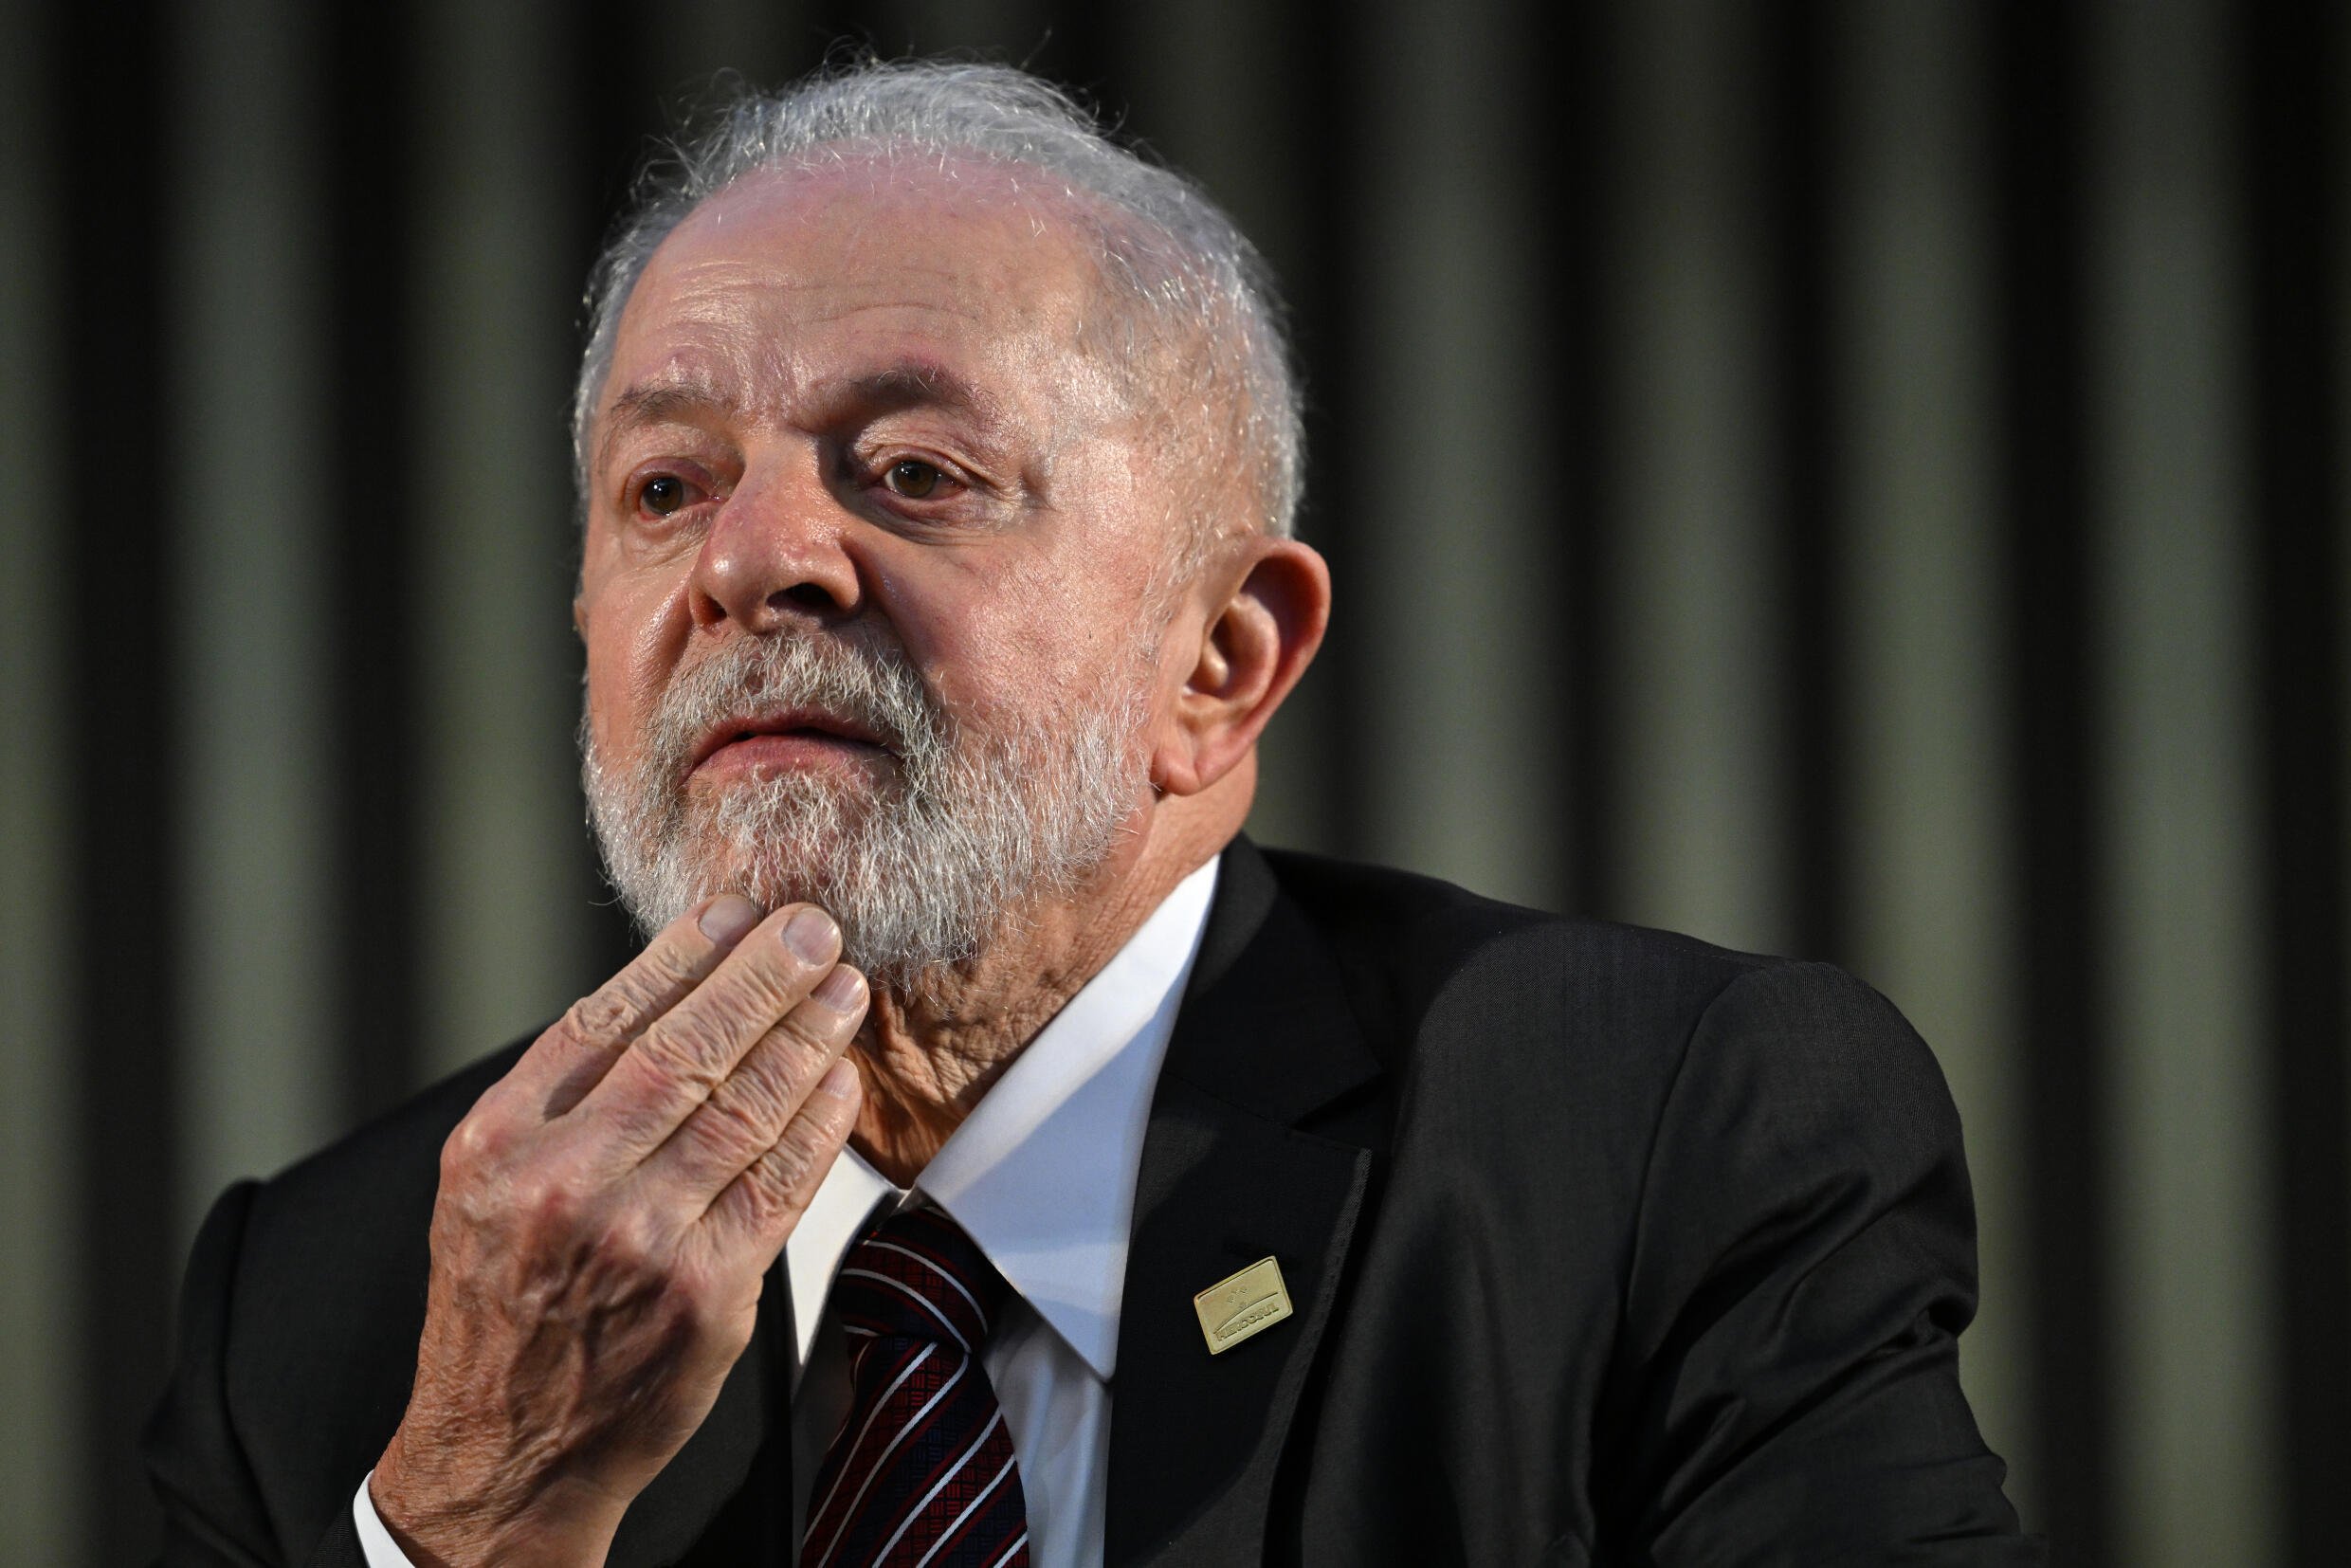 Der brasilianische Präsident Luiz Inacio Lula da Silva unterhält bisher freundschaftliche Beziehungen zu Maduro, doch der Essequibo-Streit birgt große Risiken für Brasilien, das sowohl an Guyana als auch an Venezuela grenzt